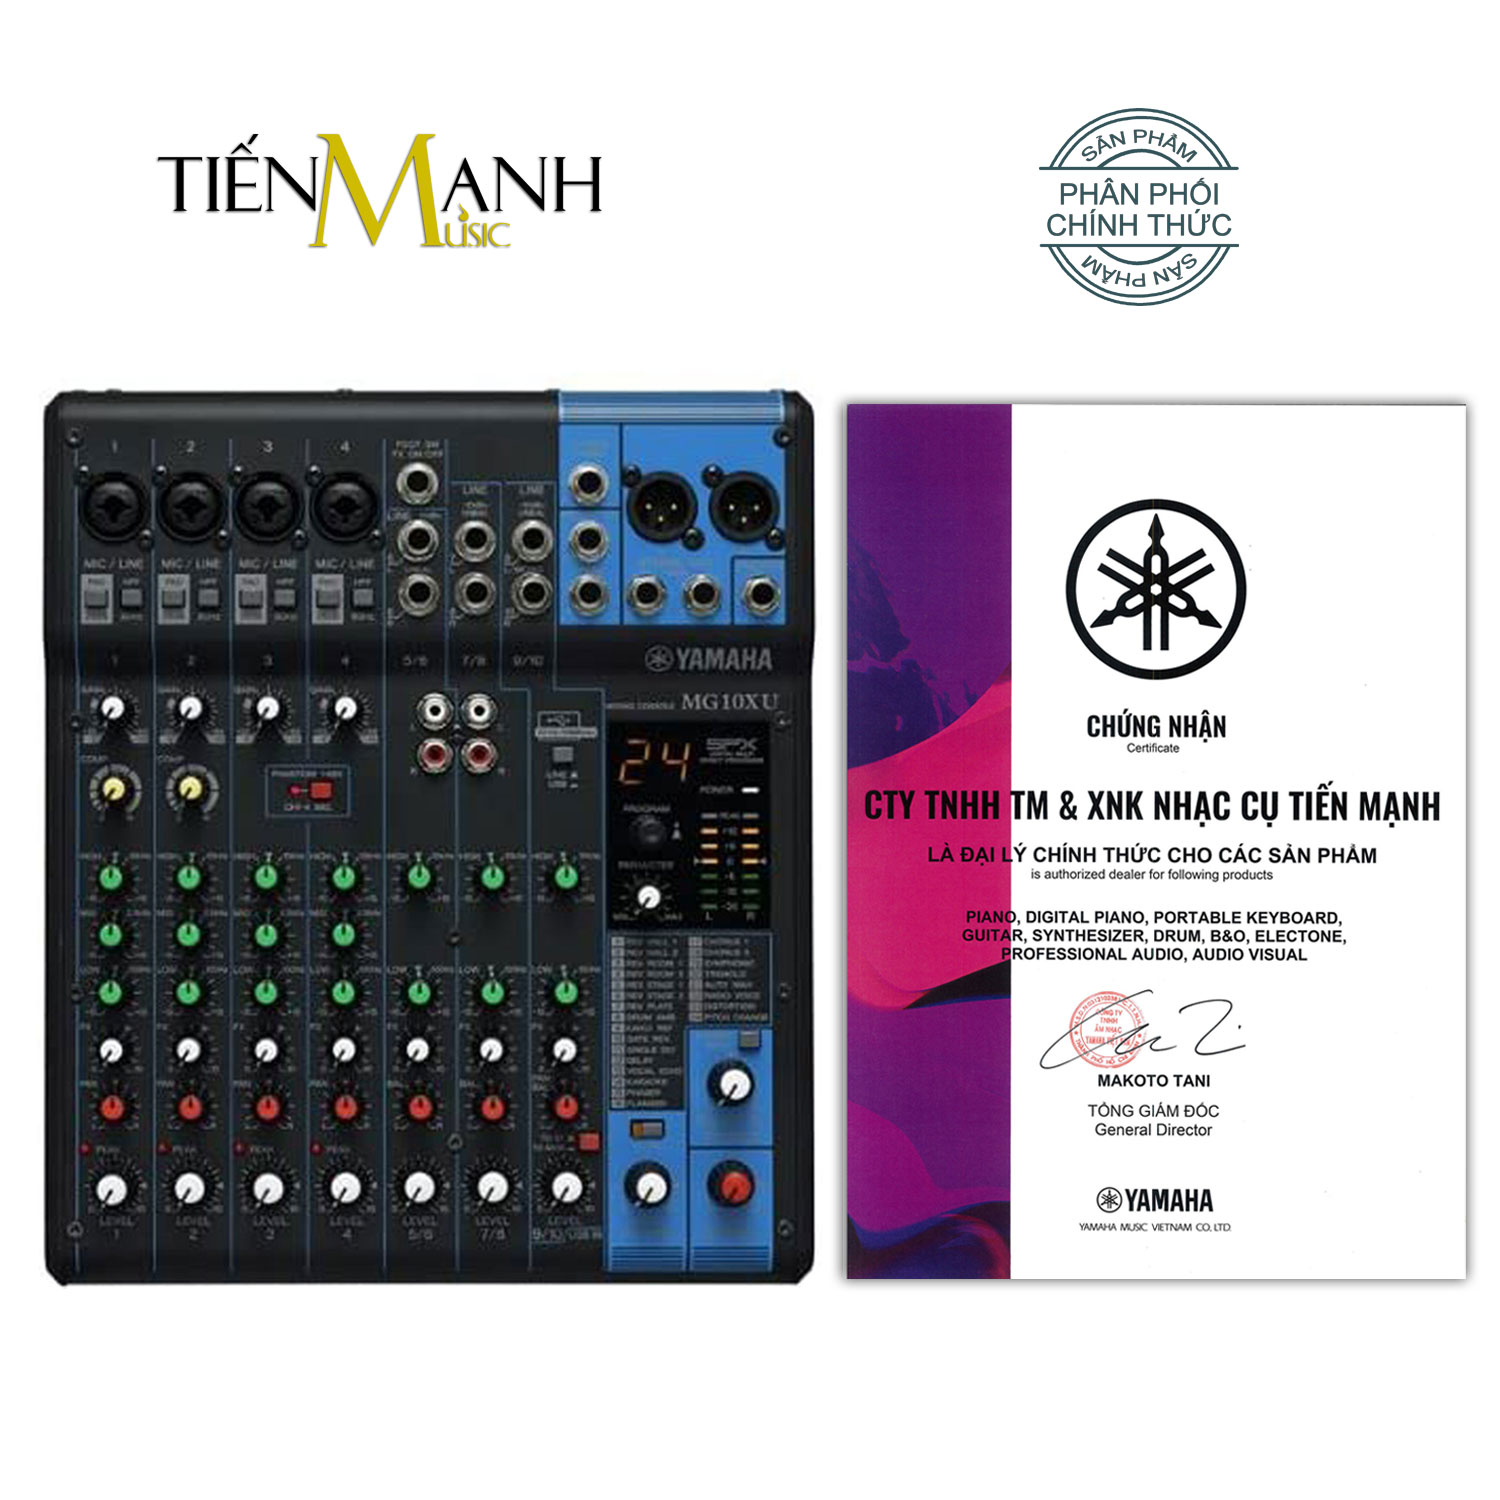 Yamaha MG10XU Soundcard kiêm Bàn Trộn Mixer Interface Compact Stereo Mixing Console Phòng Thu Studio Mix MG10